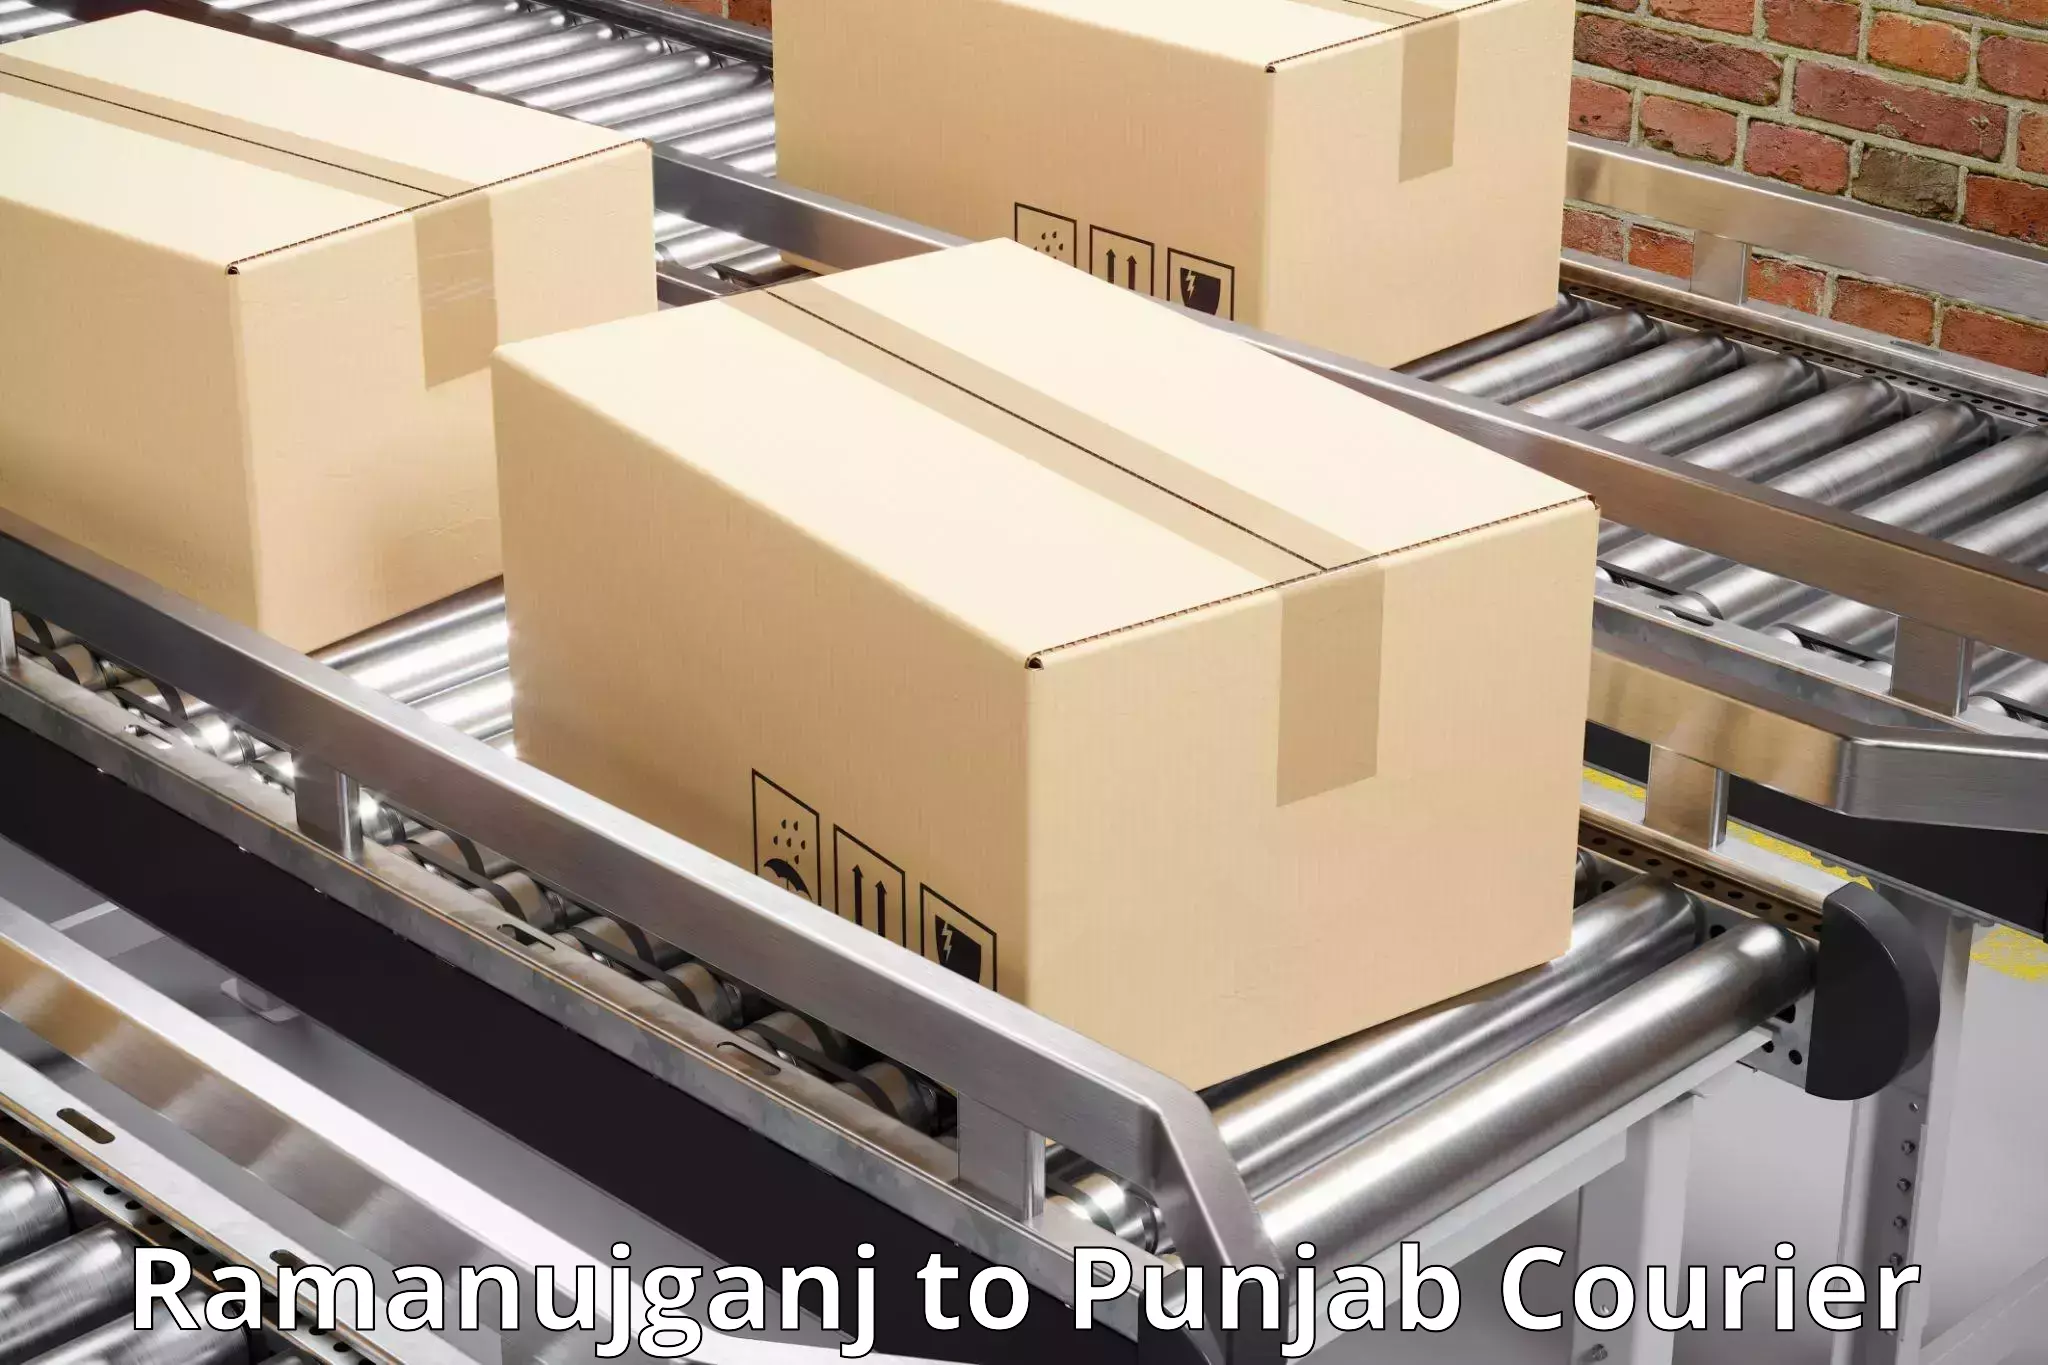 Urgent courier needs Ramanujganj to Punjab